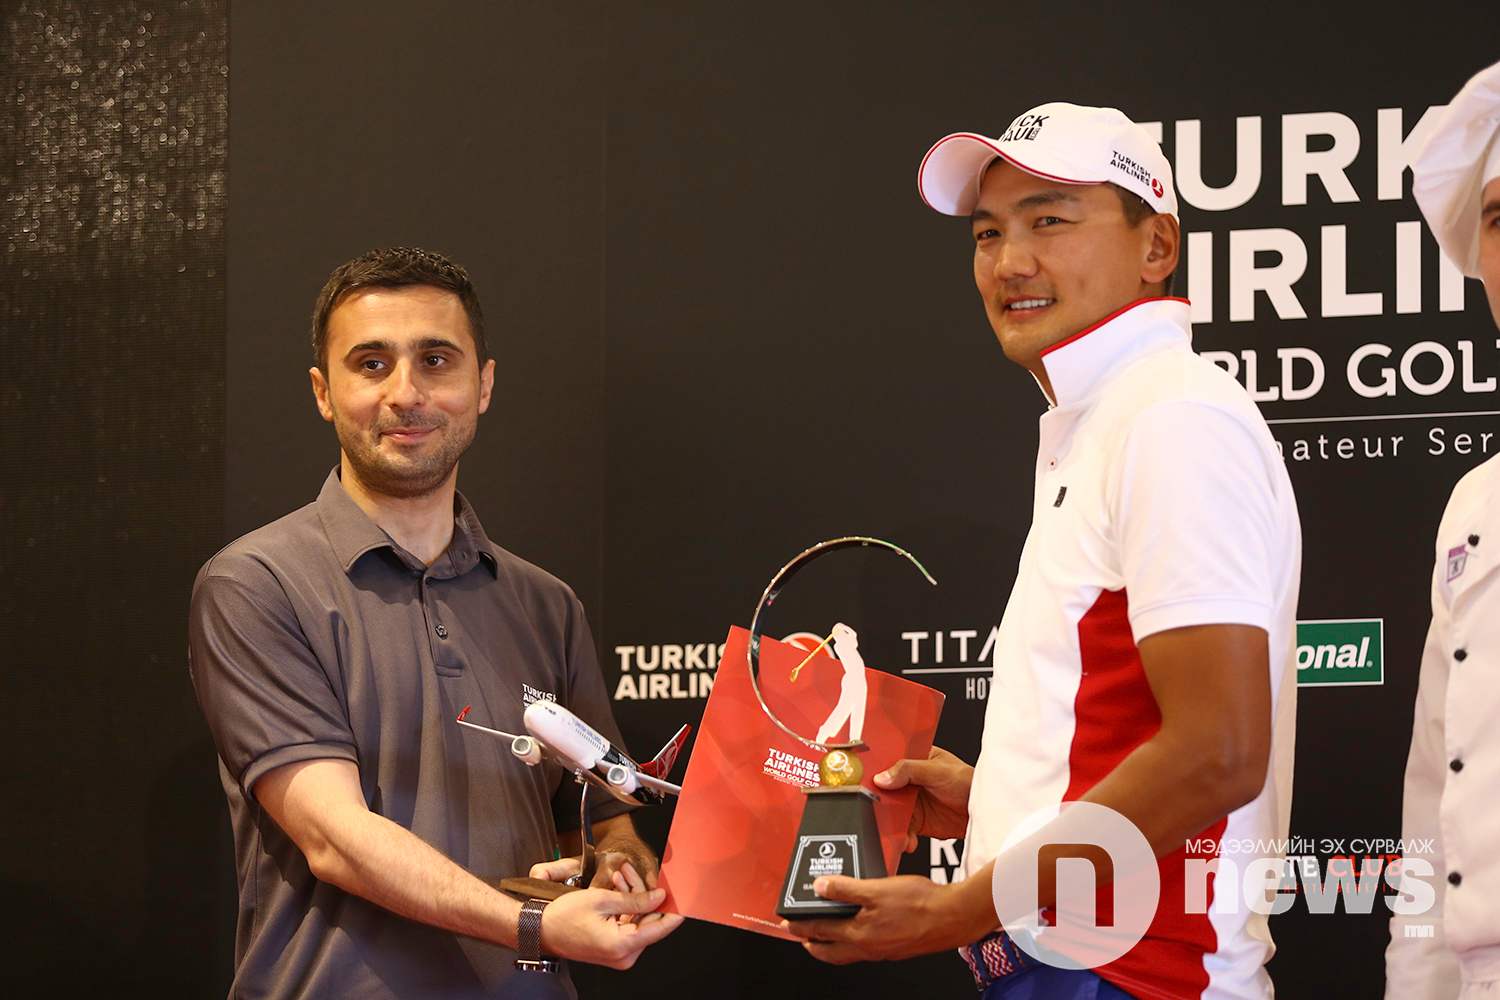 Turkish Airlines-н УБ хот дахь төлөөлөгчийн газрын захирал Али Өздэмир болон 2018 оны тэмцээний ялагч М.Баярбахдал